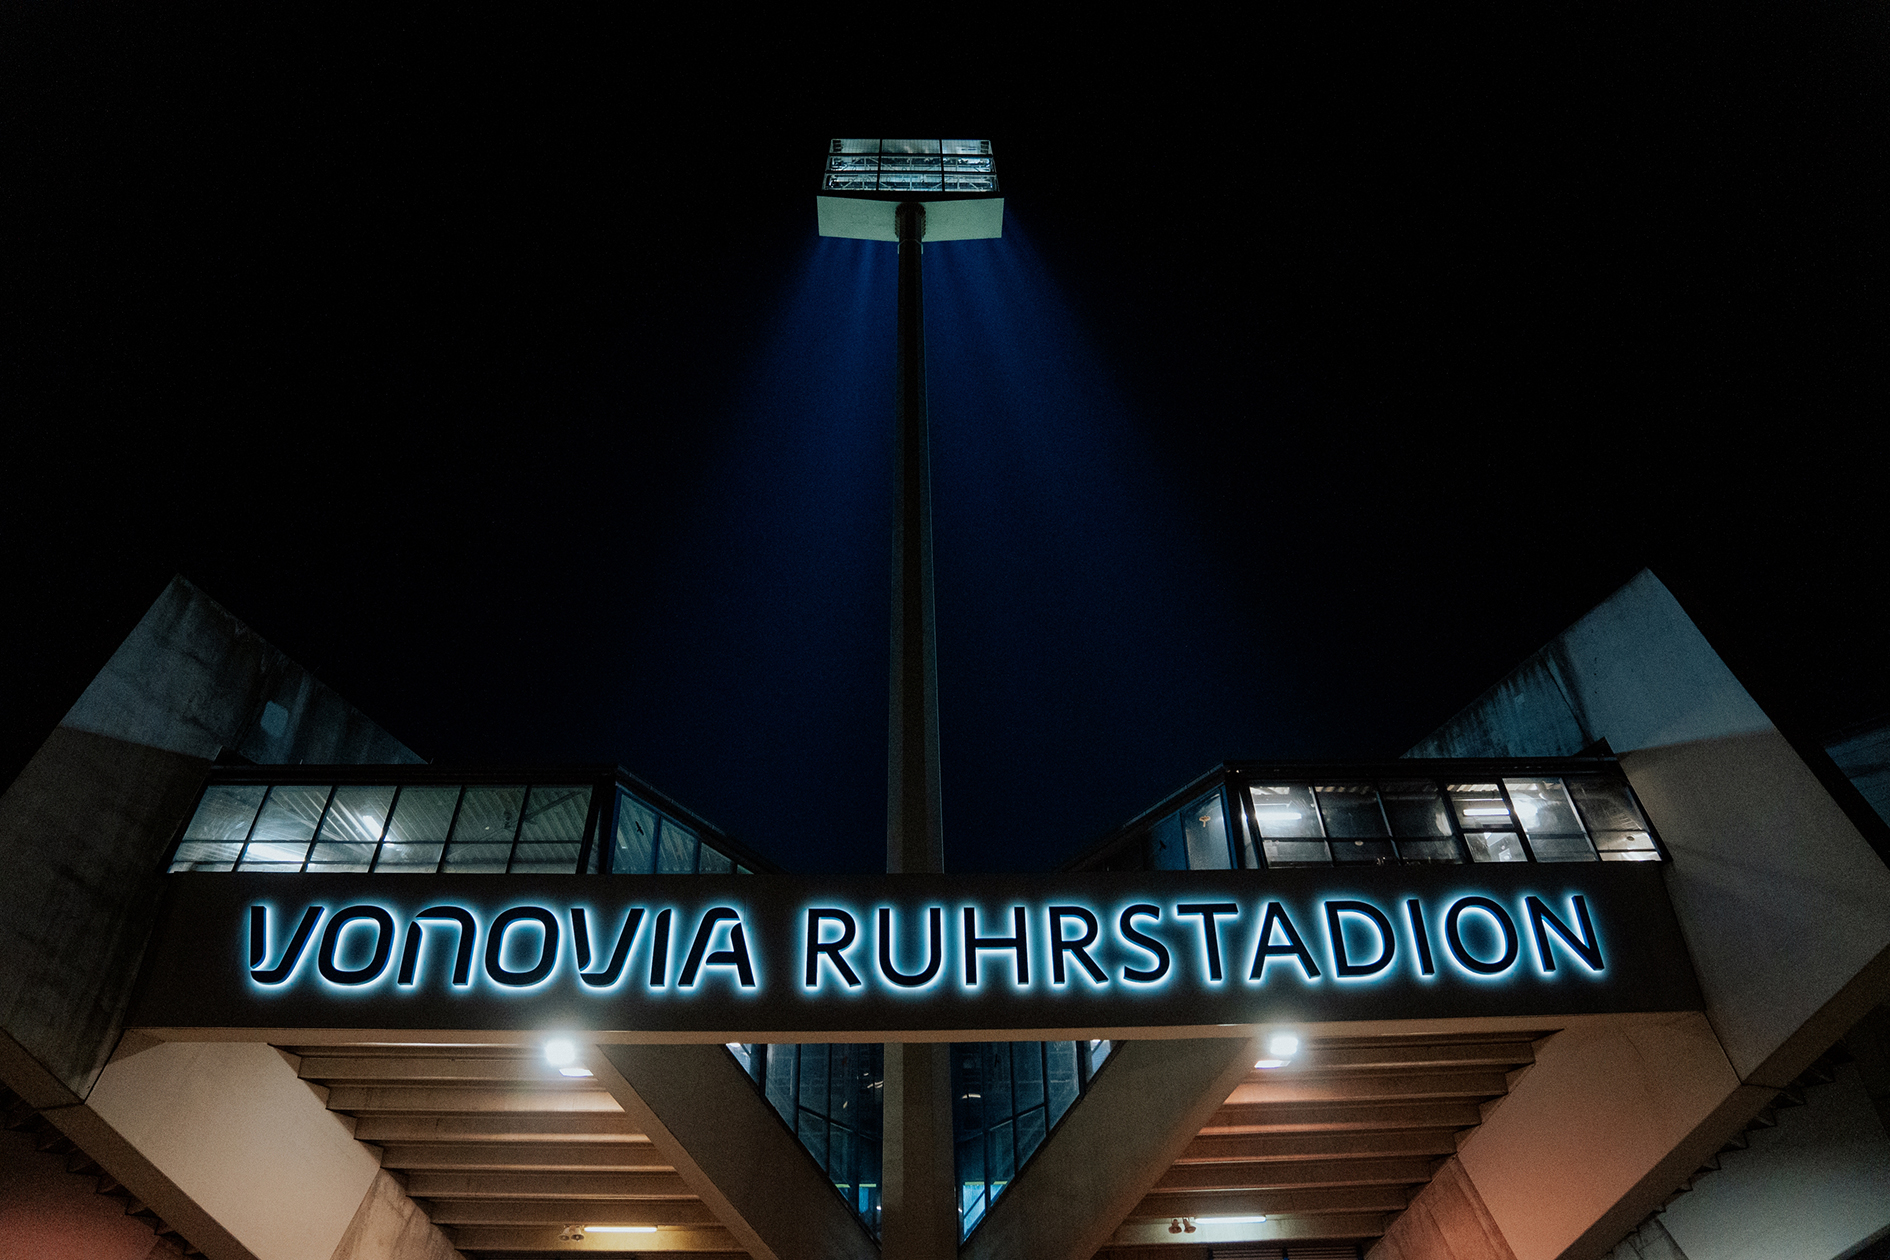 Klüh ist offizieller Security-Partner im Vonovia Ruhrstadion und in den VIP-Bereichen